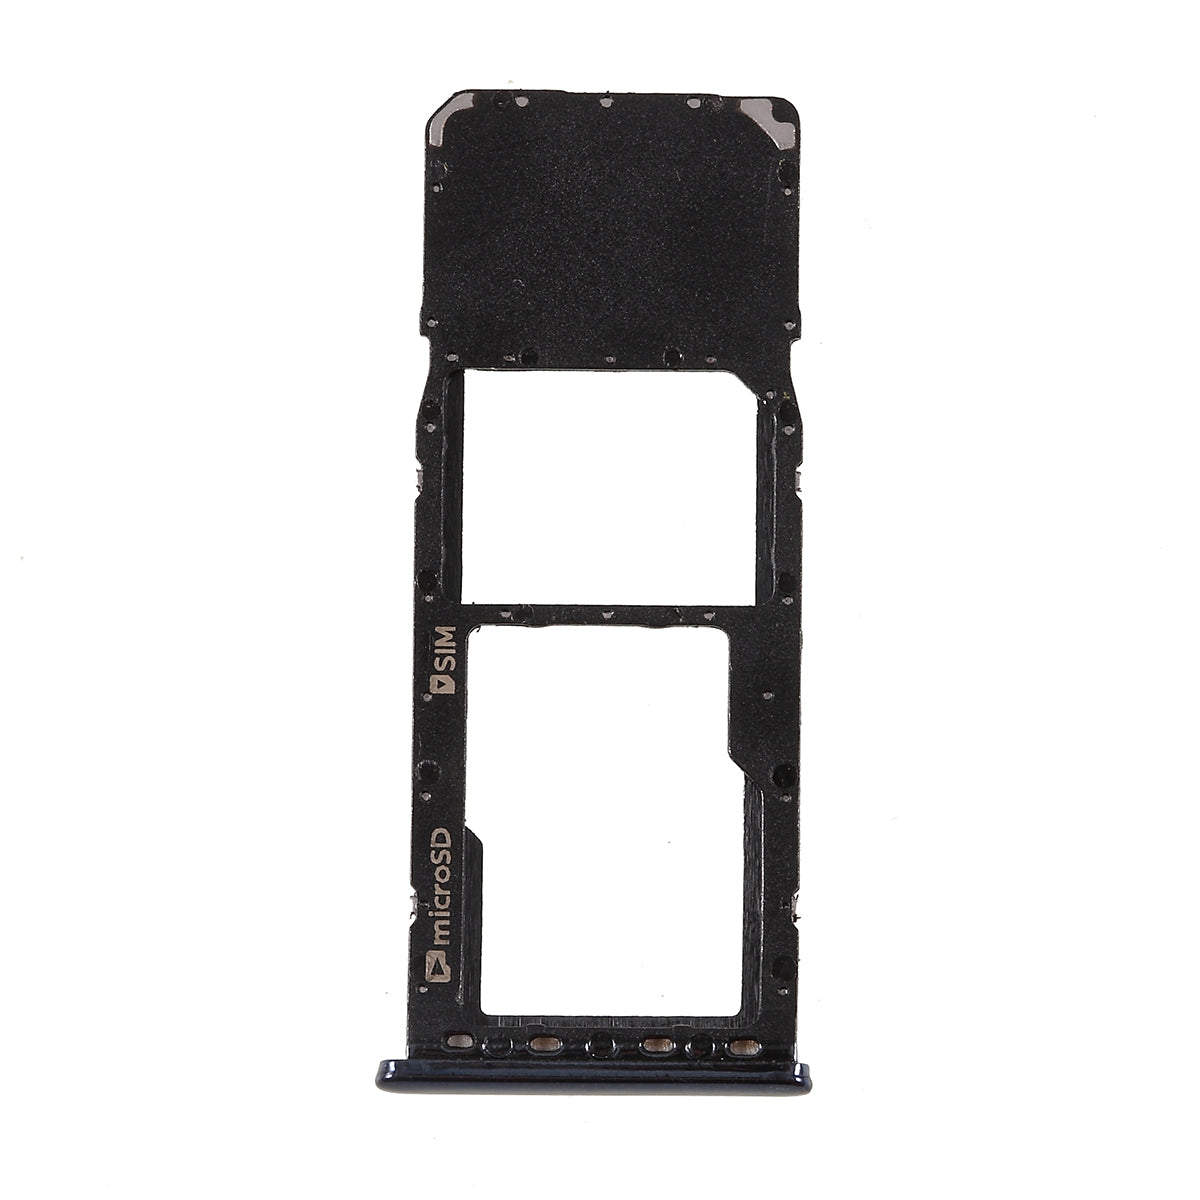 OEM Single SIM Card Tray Holder Slot for Samsung Galaxy A7 (2018) A750 - Black